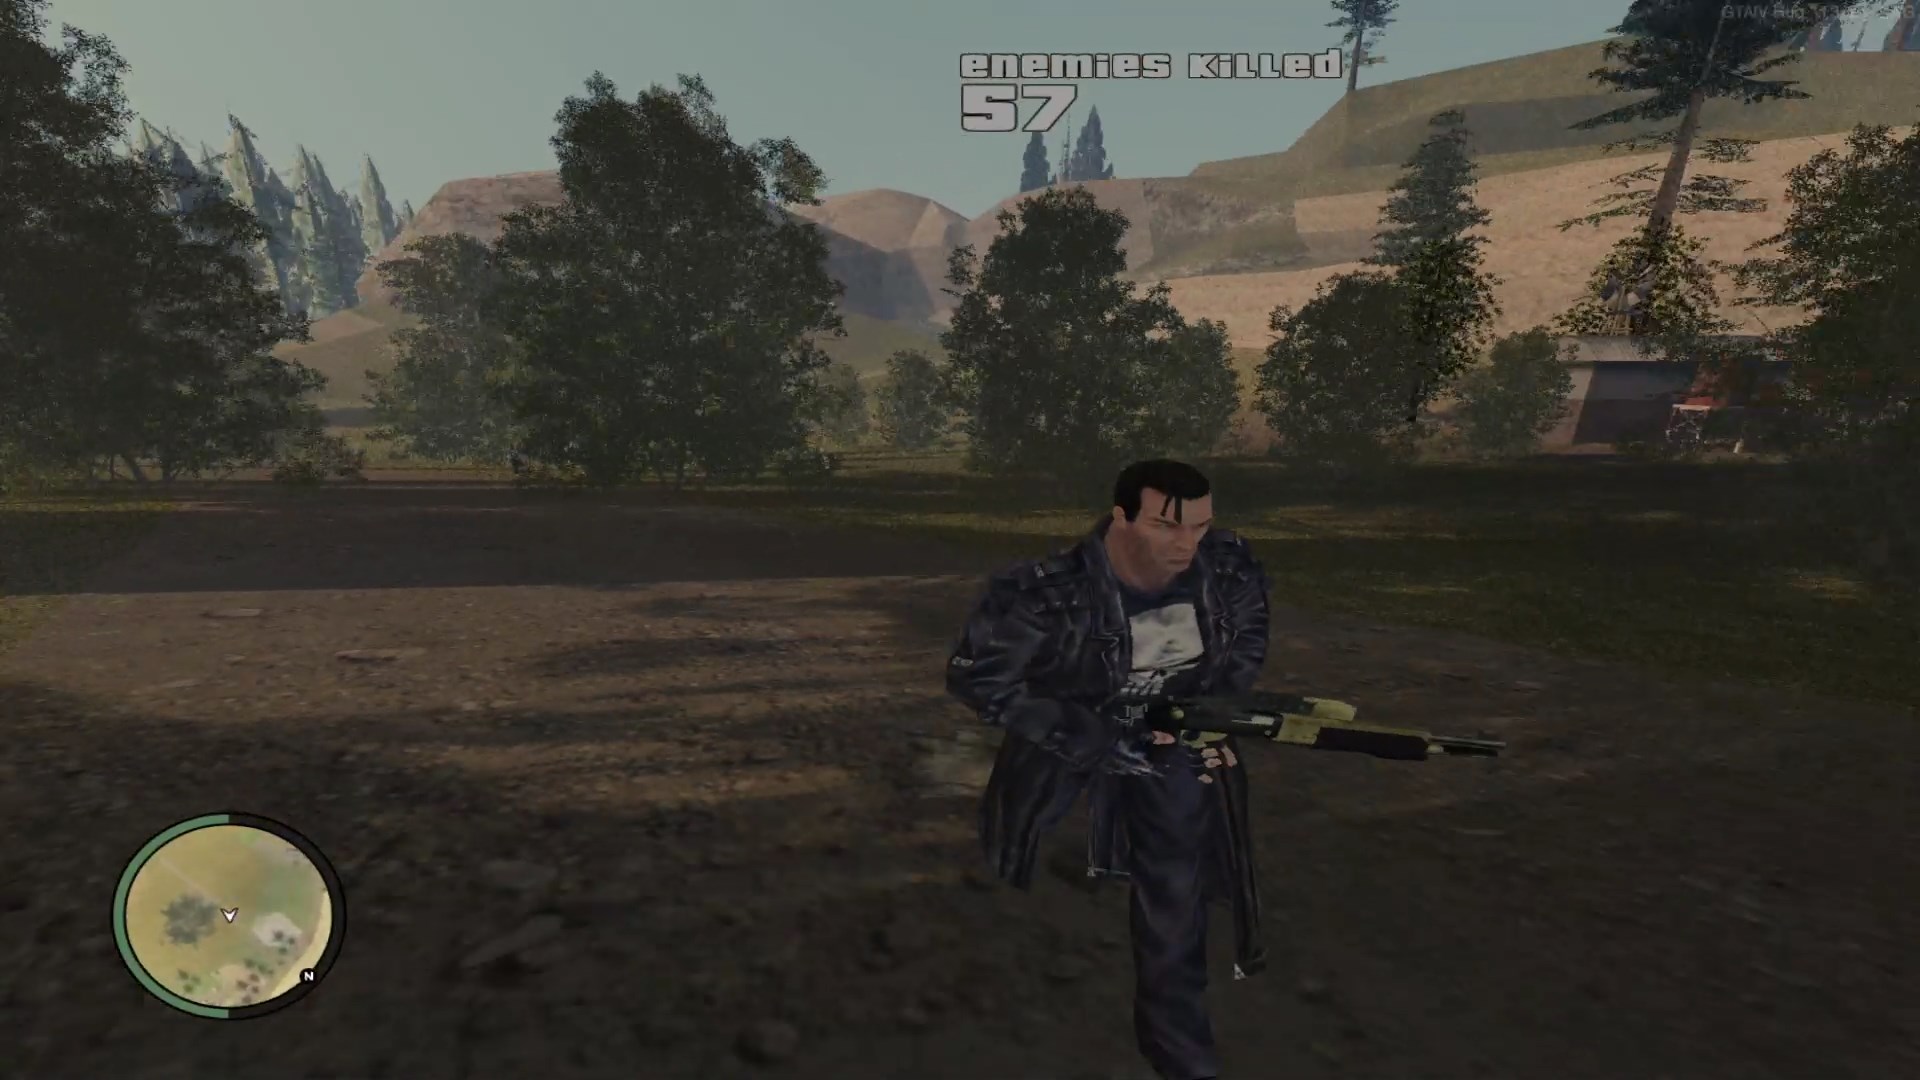 GTA IV - Armas no Mapa - Devora Games